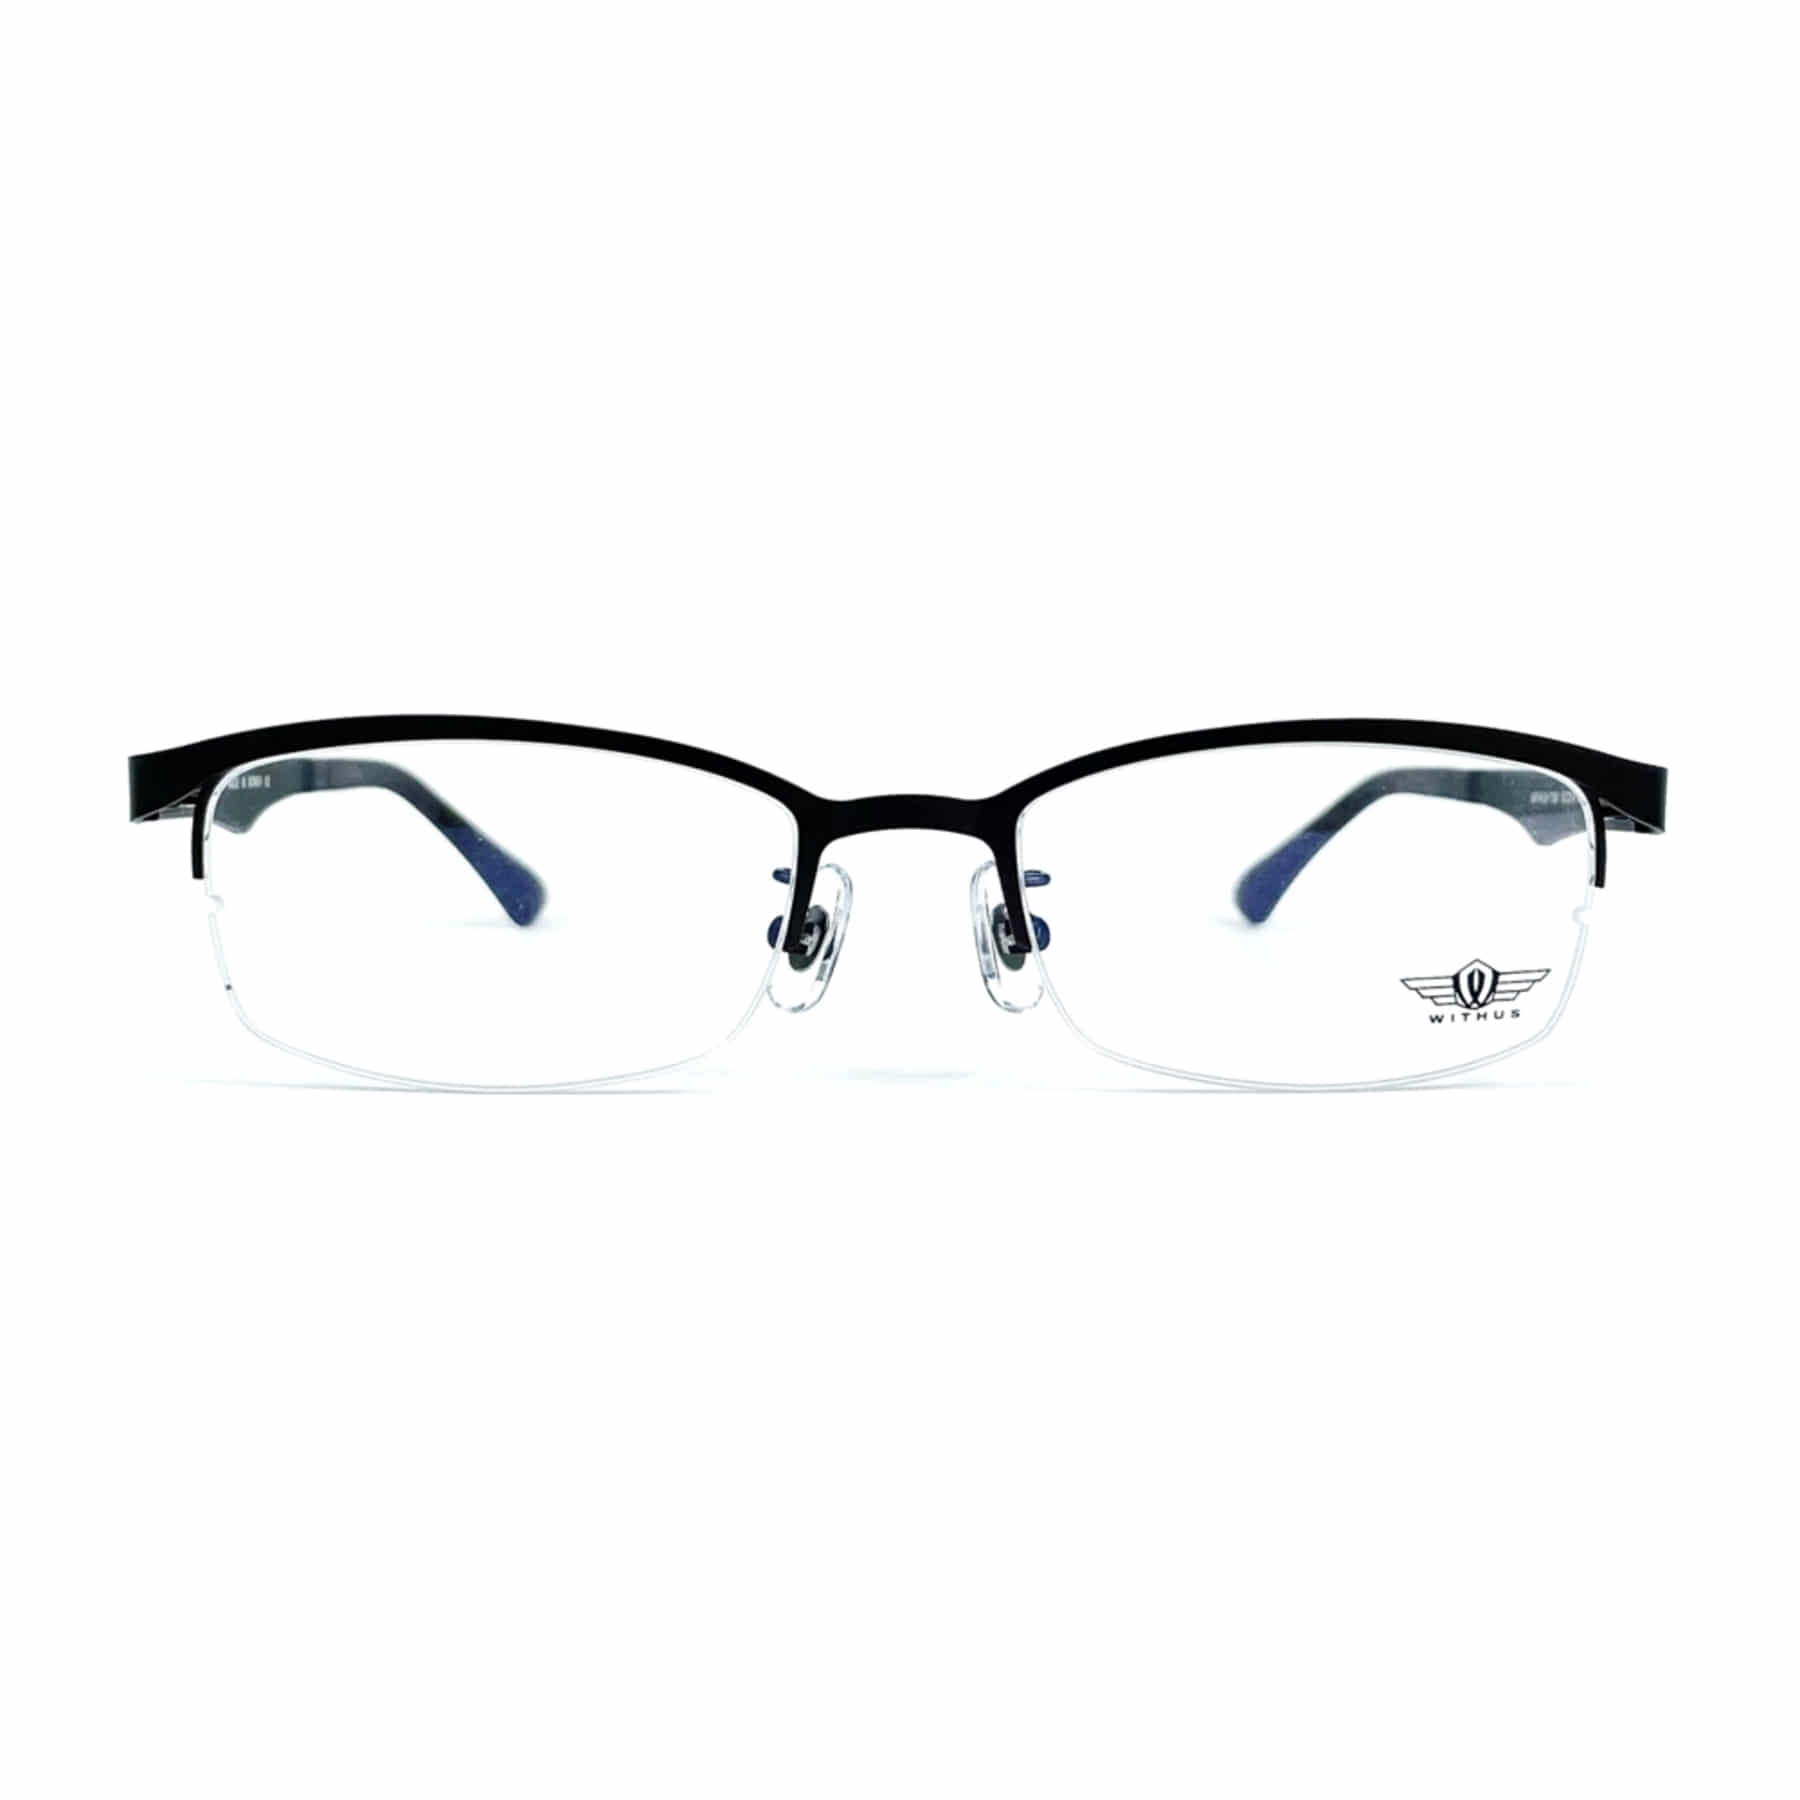 WITHUS-7391, Korean glasses, sunglasses, eyeglasses, glasses